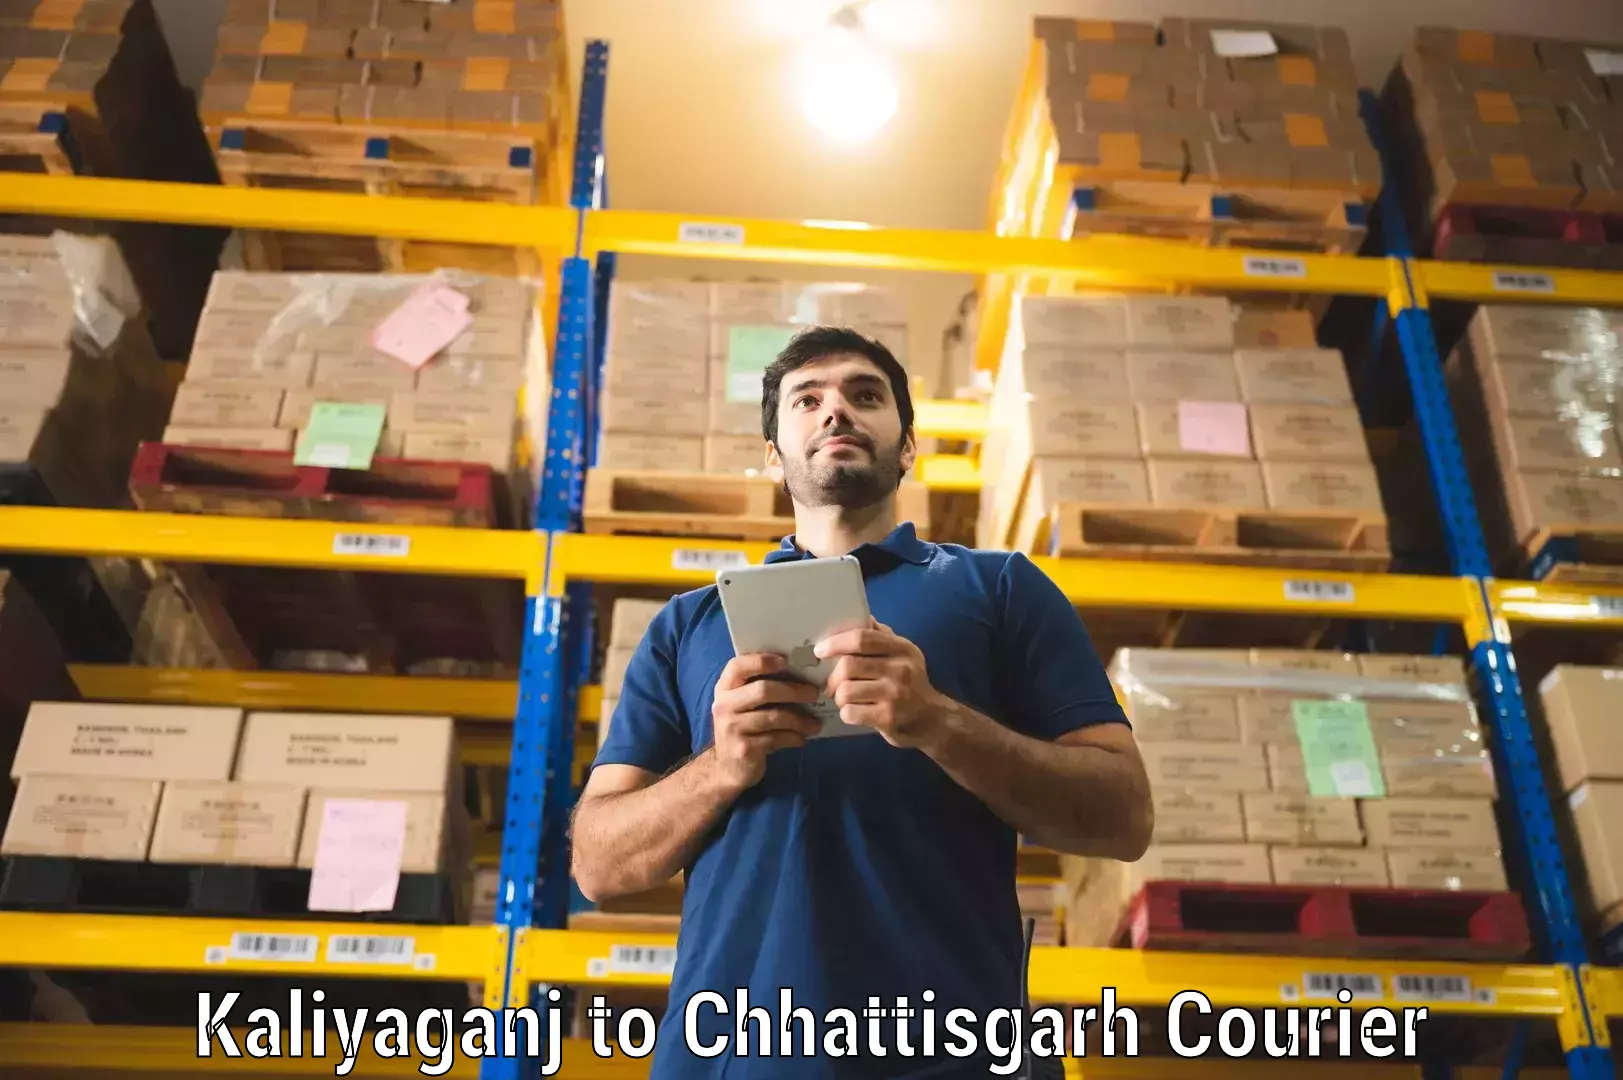 Customer-focused courier Kaliyaganj to Dongargarh